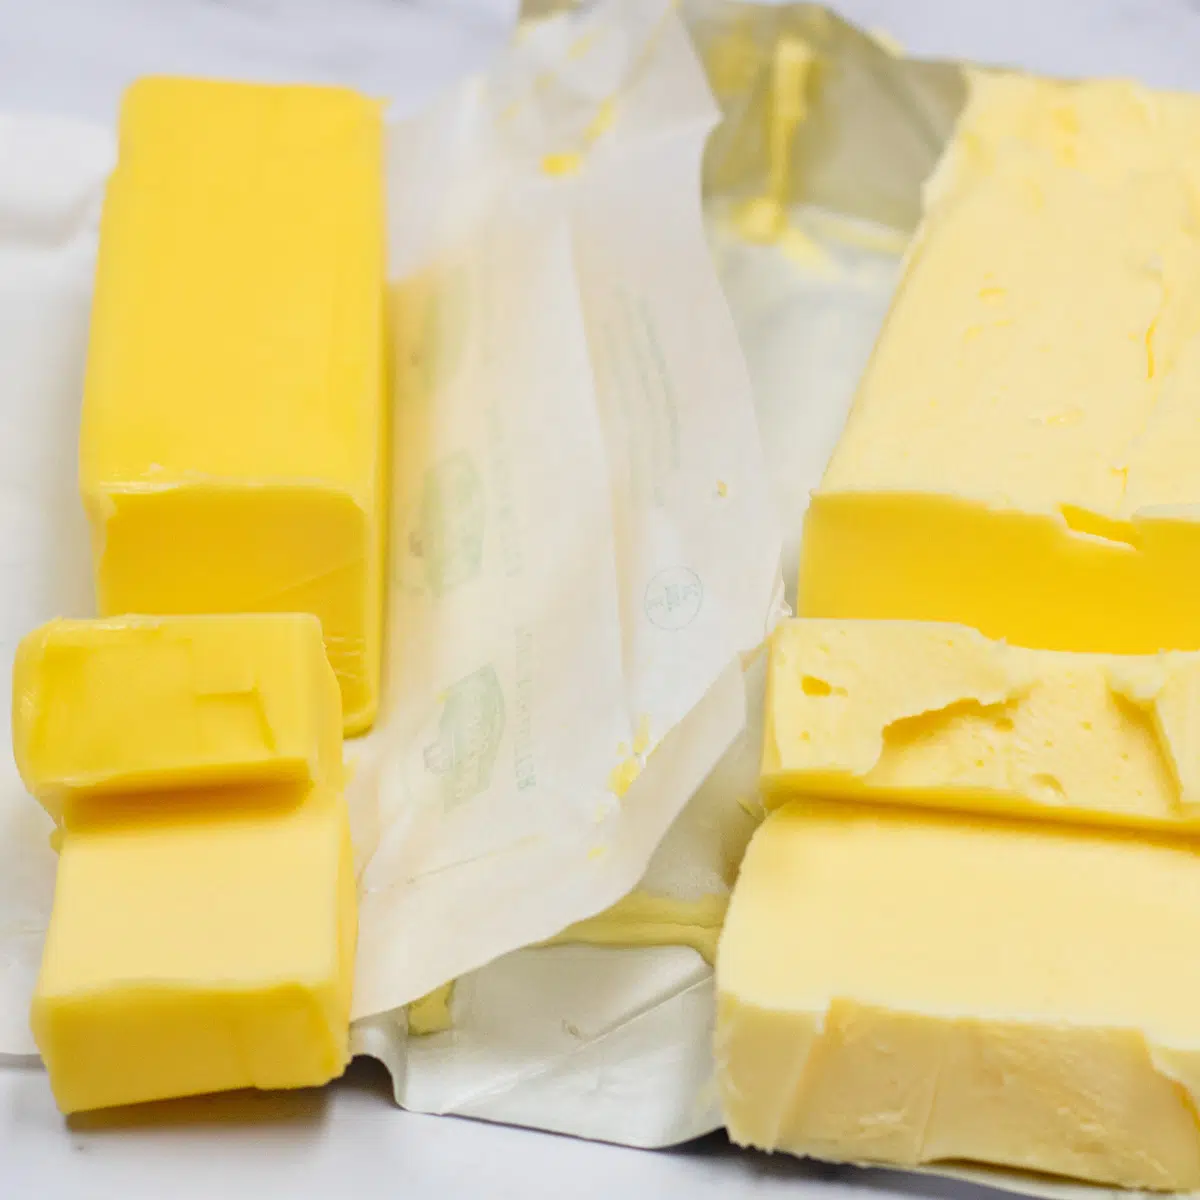 Sida vid sida bild av smör vs förkortning när man jämför öppnade förpackningar.